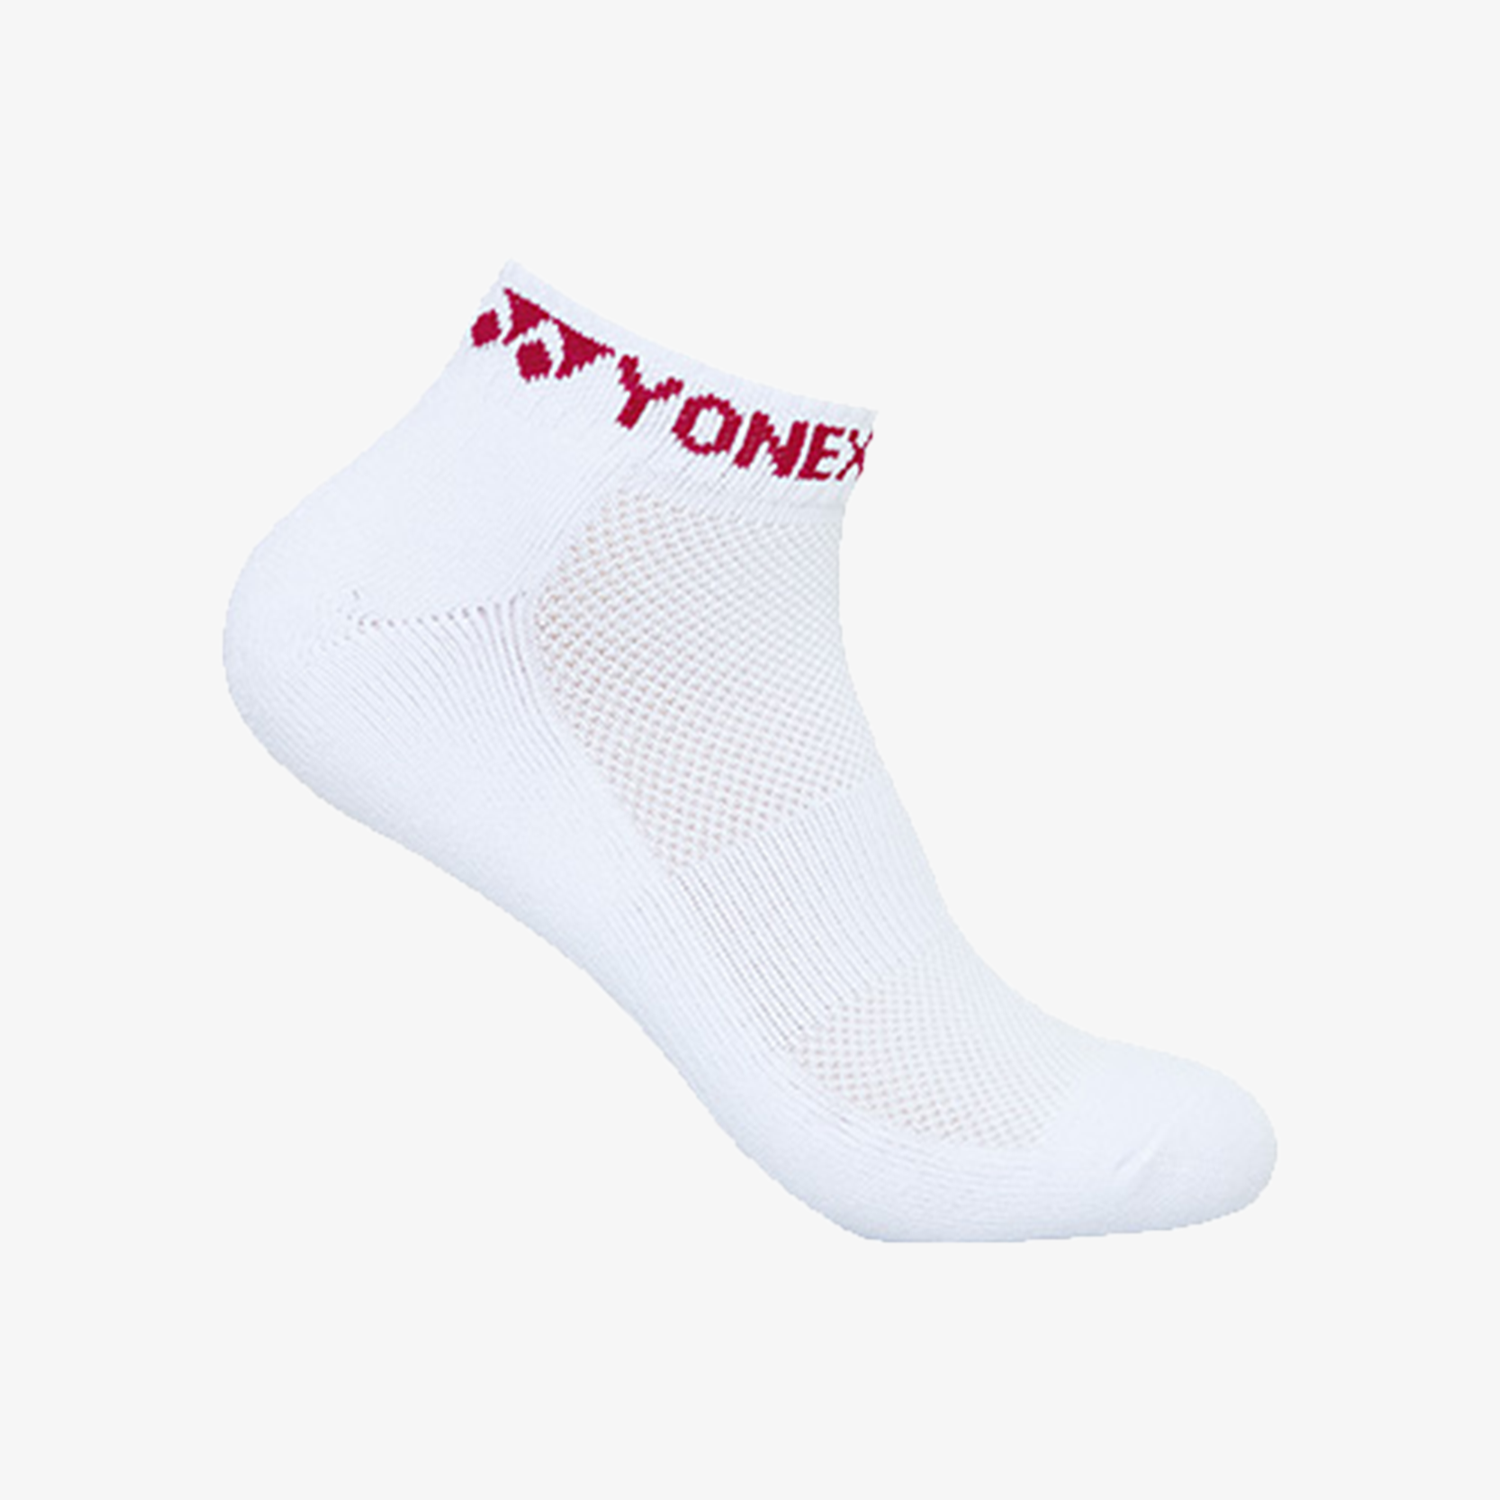 Yonex Women's Socks 239SN008F (Purple)